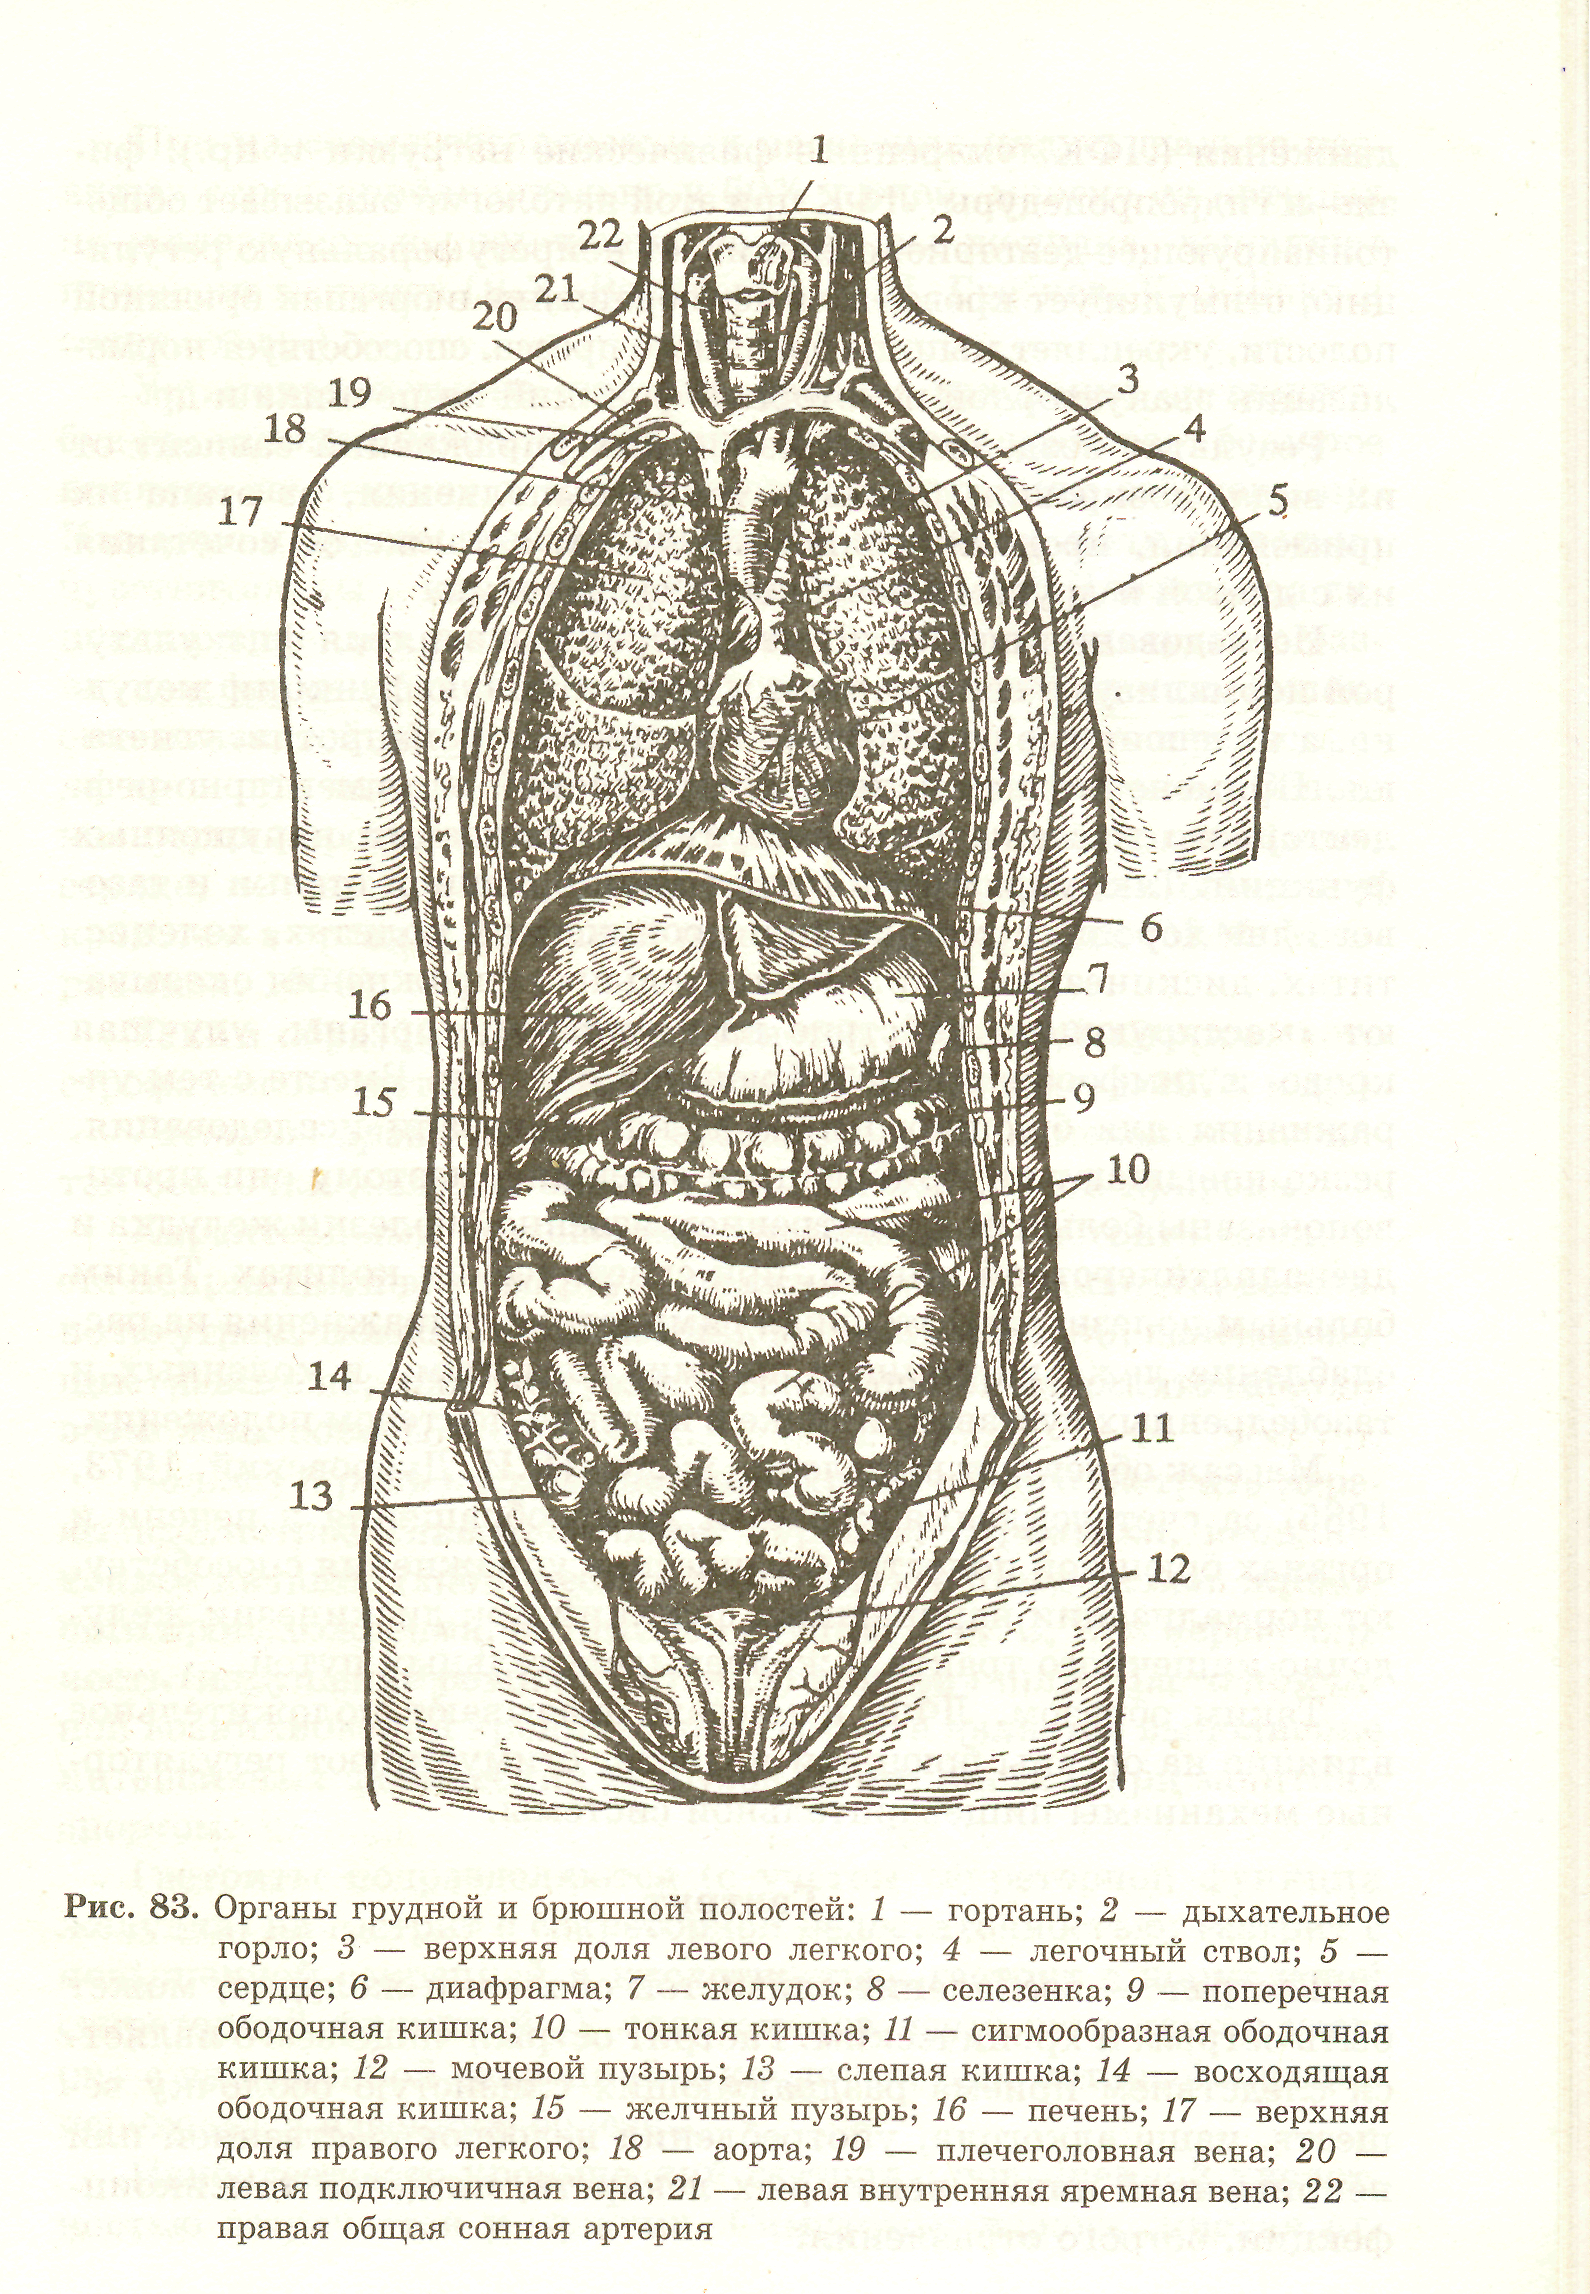 Органы в брюшной полости женщины фото внутренние схема расположения с описанием